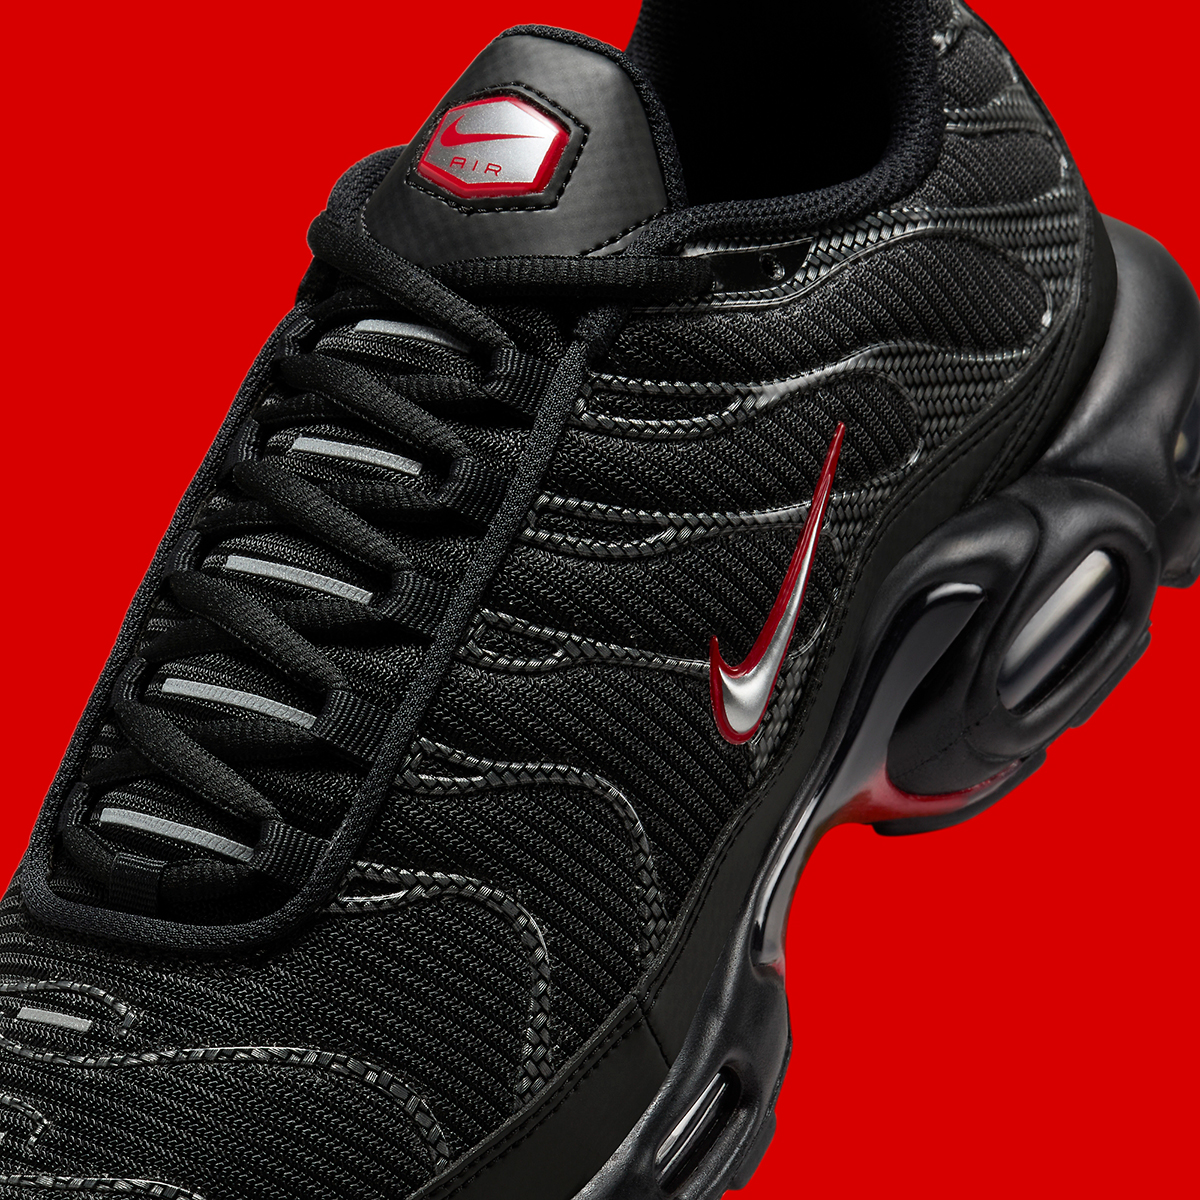 Nike Air Max Plus Black Red Carbon Fiber Hf4293 001 6